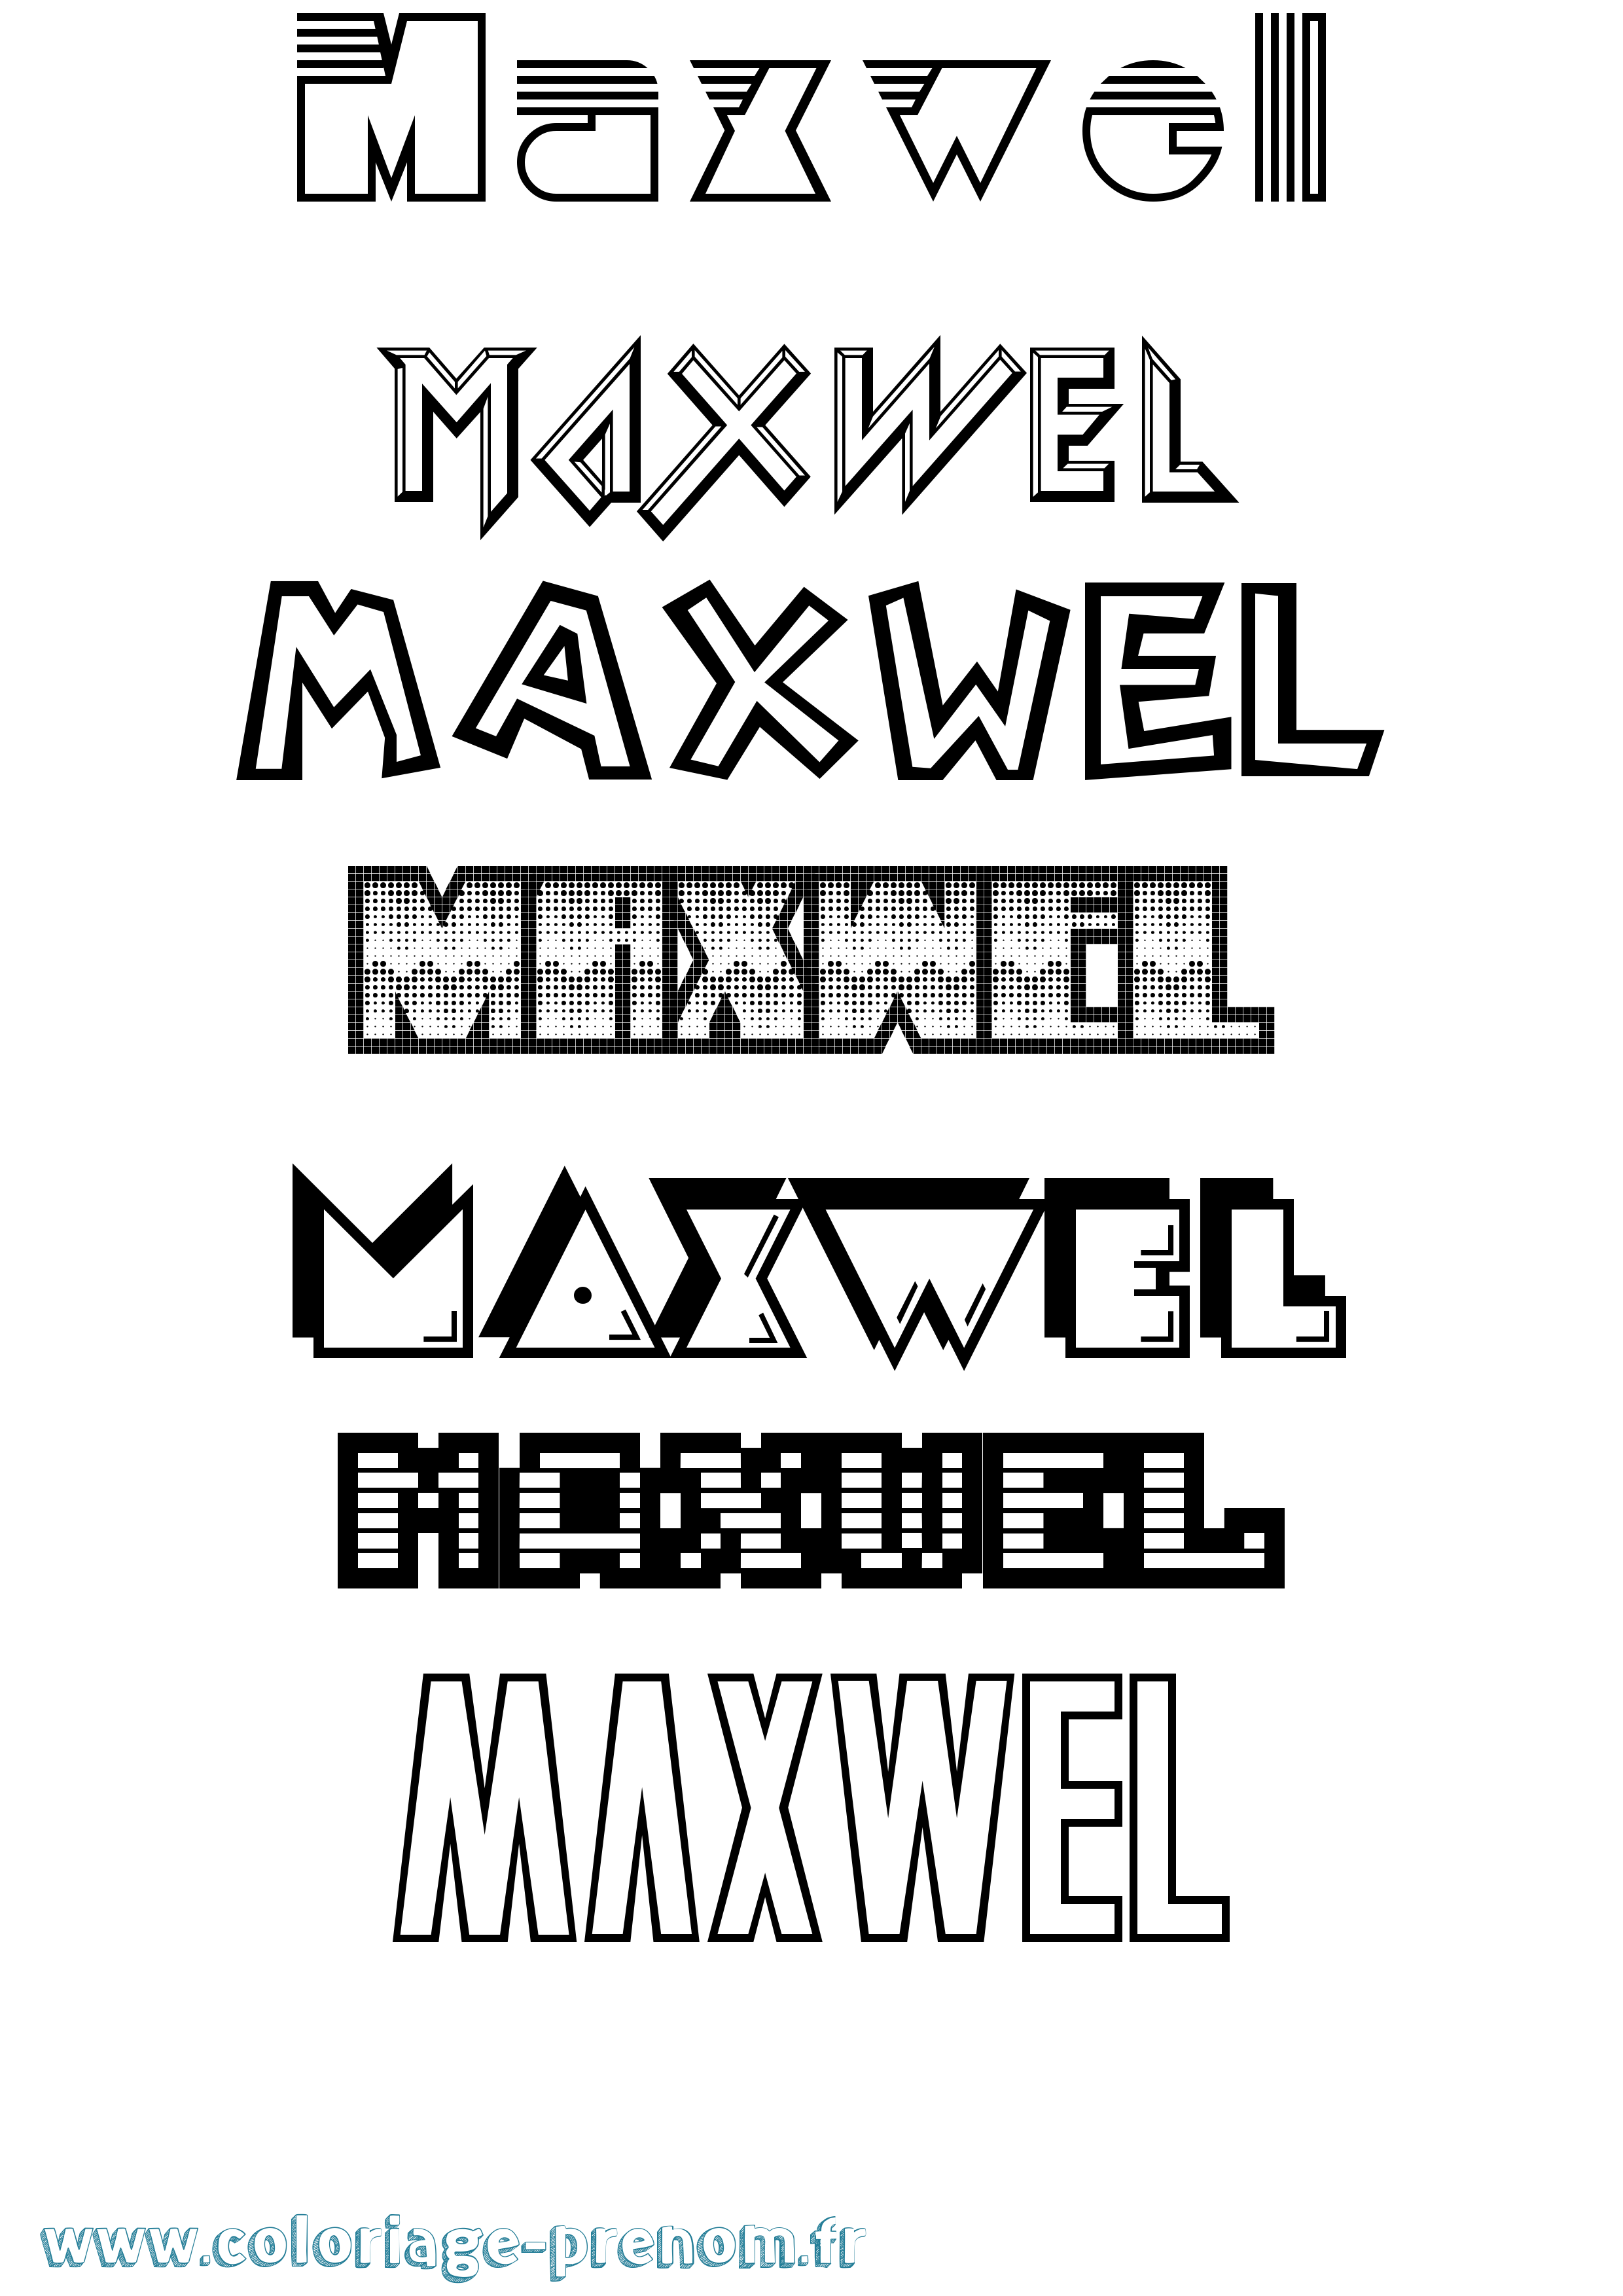 Coloriage prénom Maxwel Jeux Vidéos